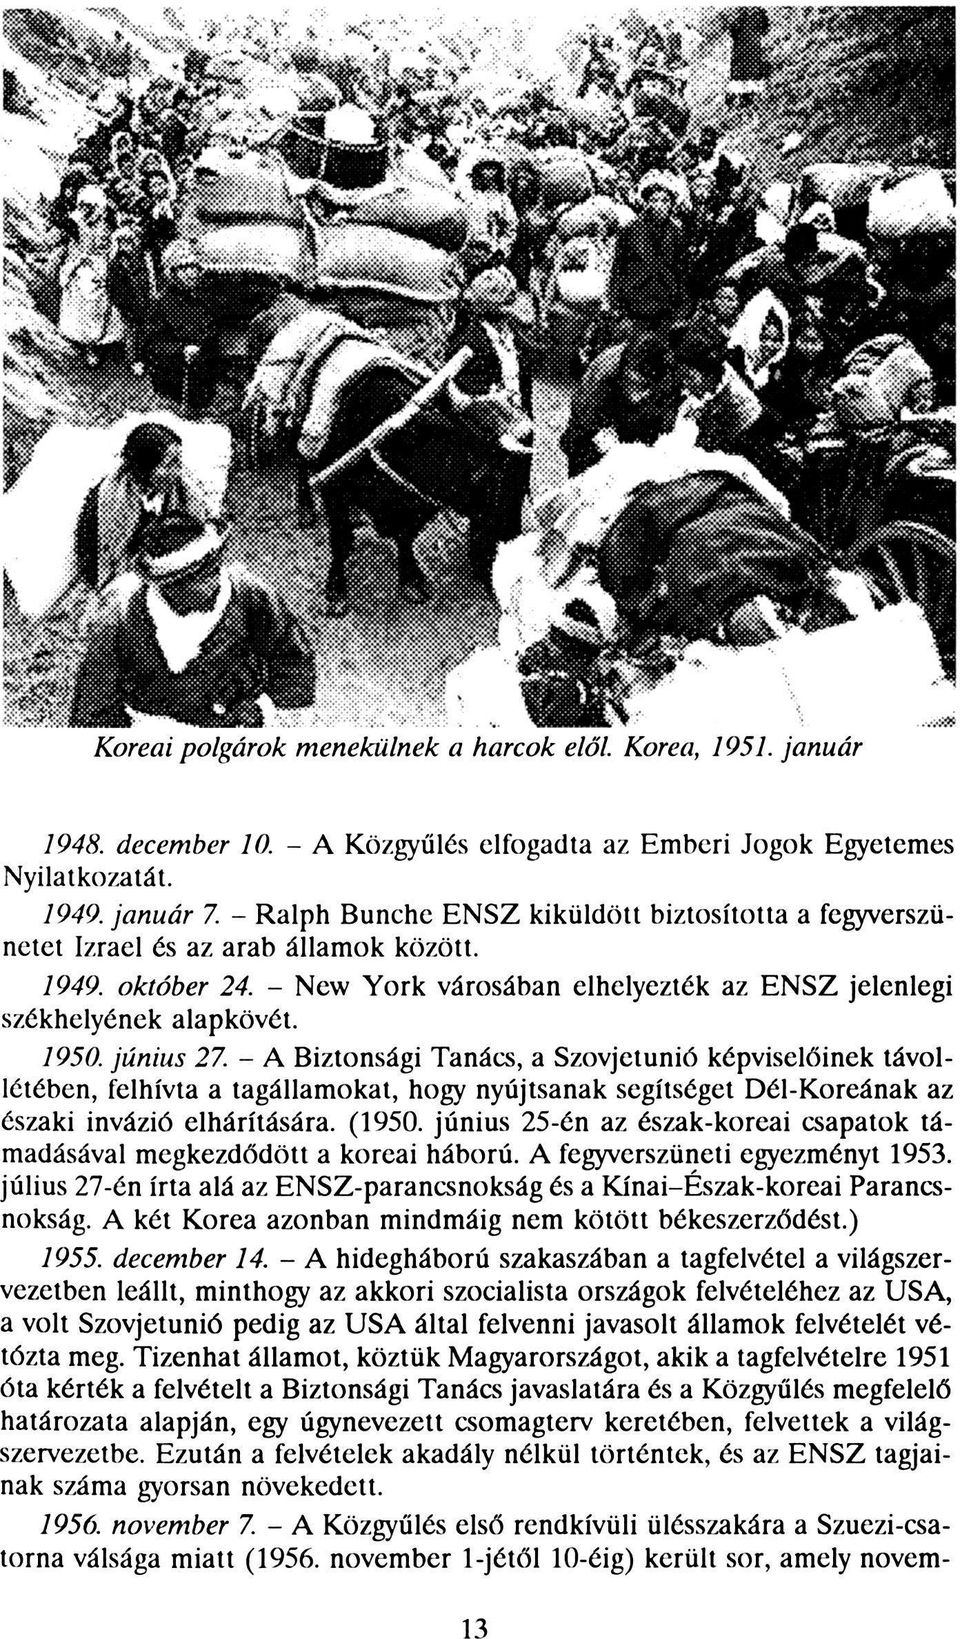 június 27. - A Biztonsági Tanács, a Szovjetunió képviselőinek távollétében, felhívta a tagállamokat, hogy nyújtsanak segítséget Dél-Koreának az északi invázió elhárítására. (1950.